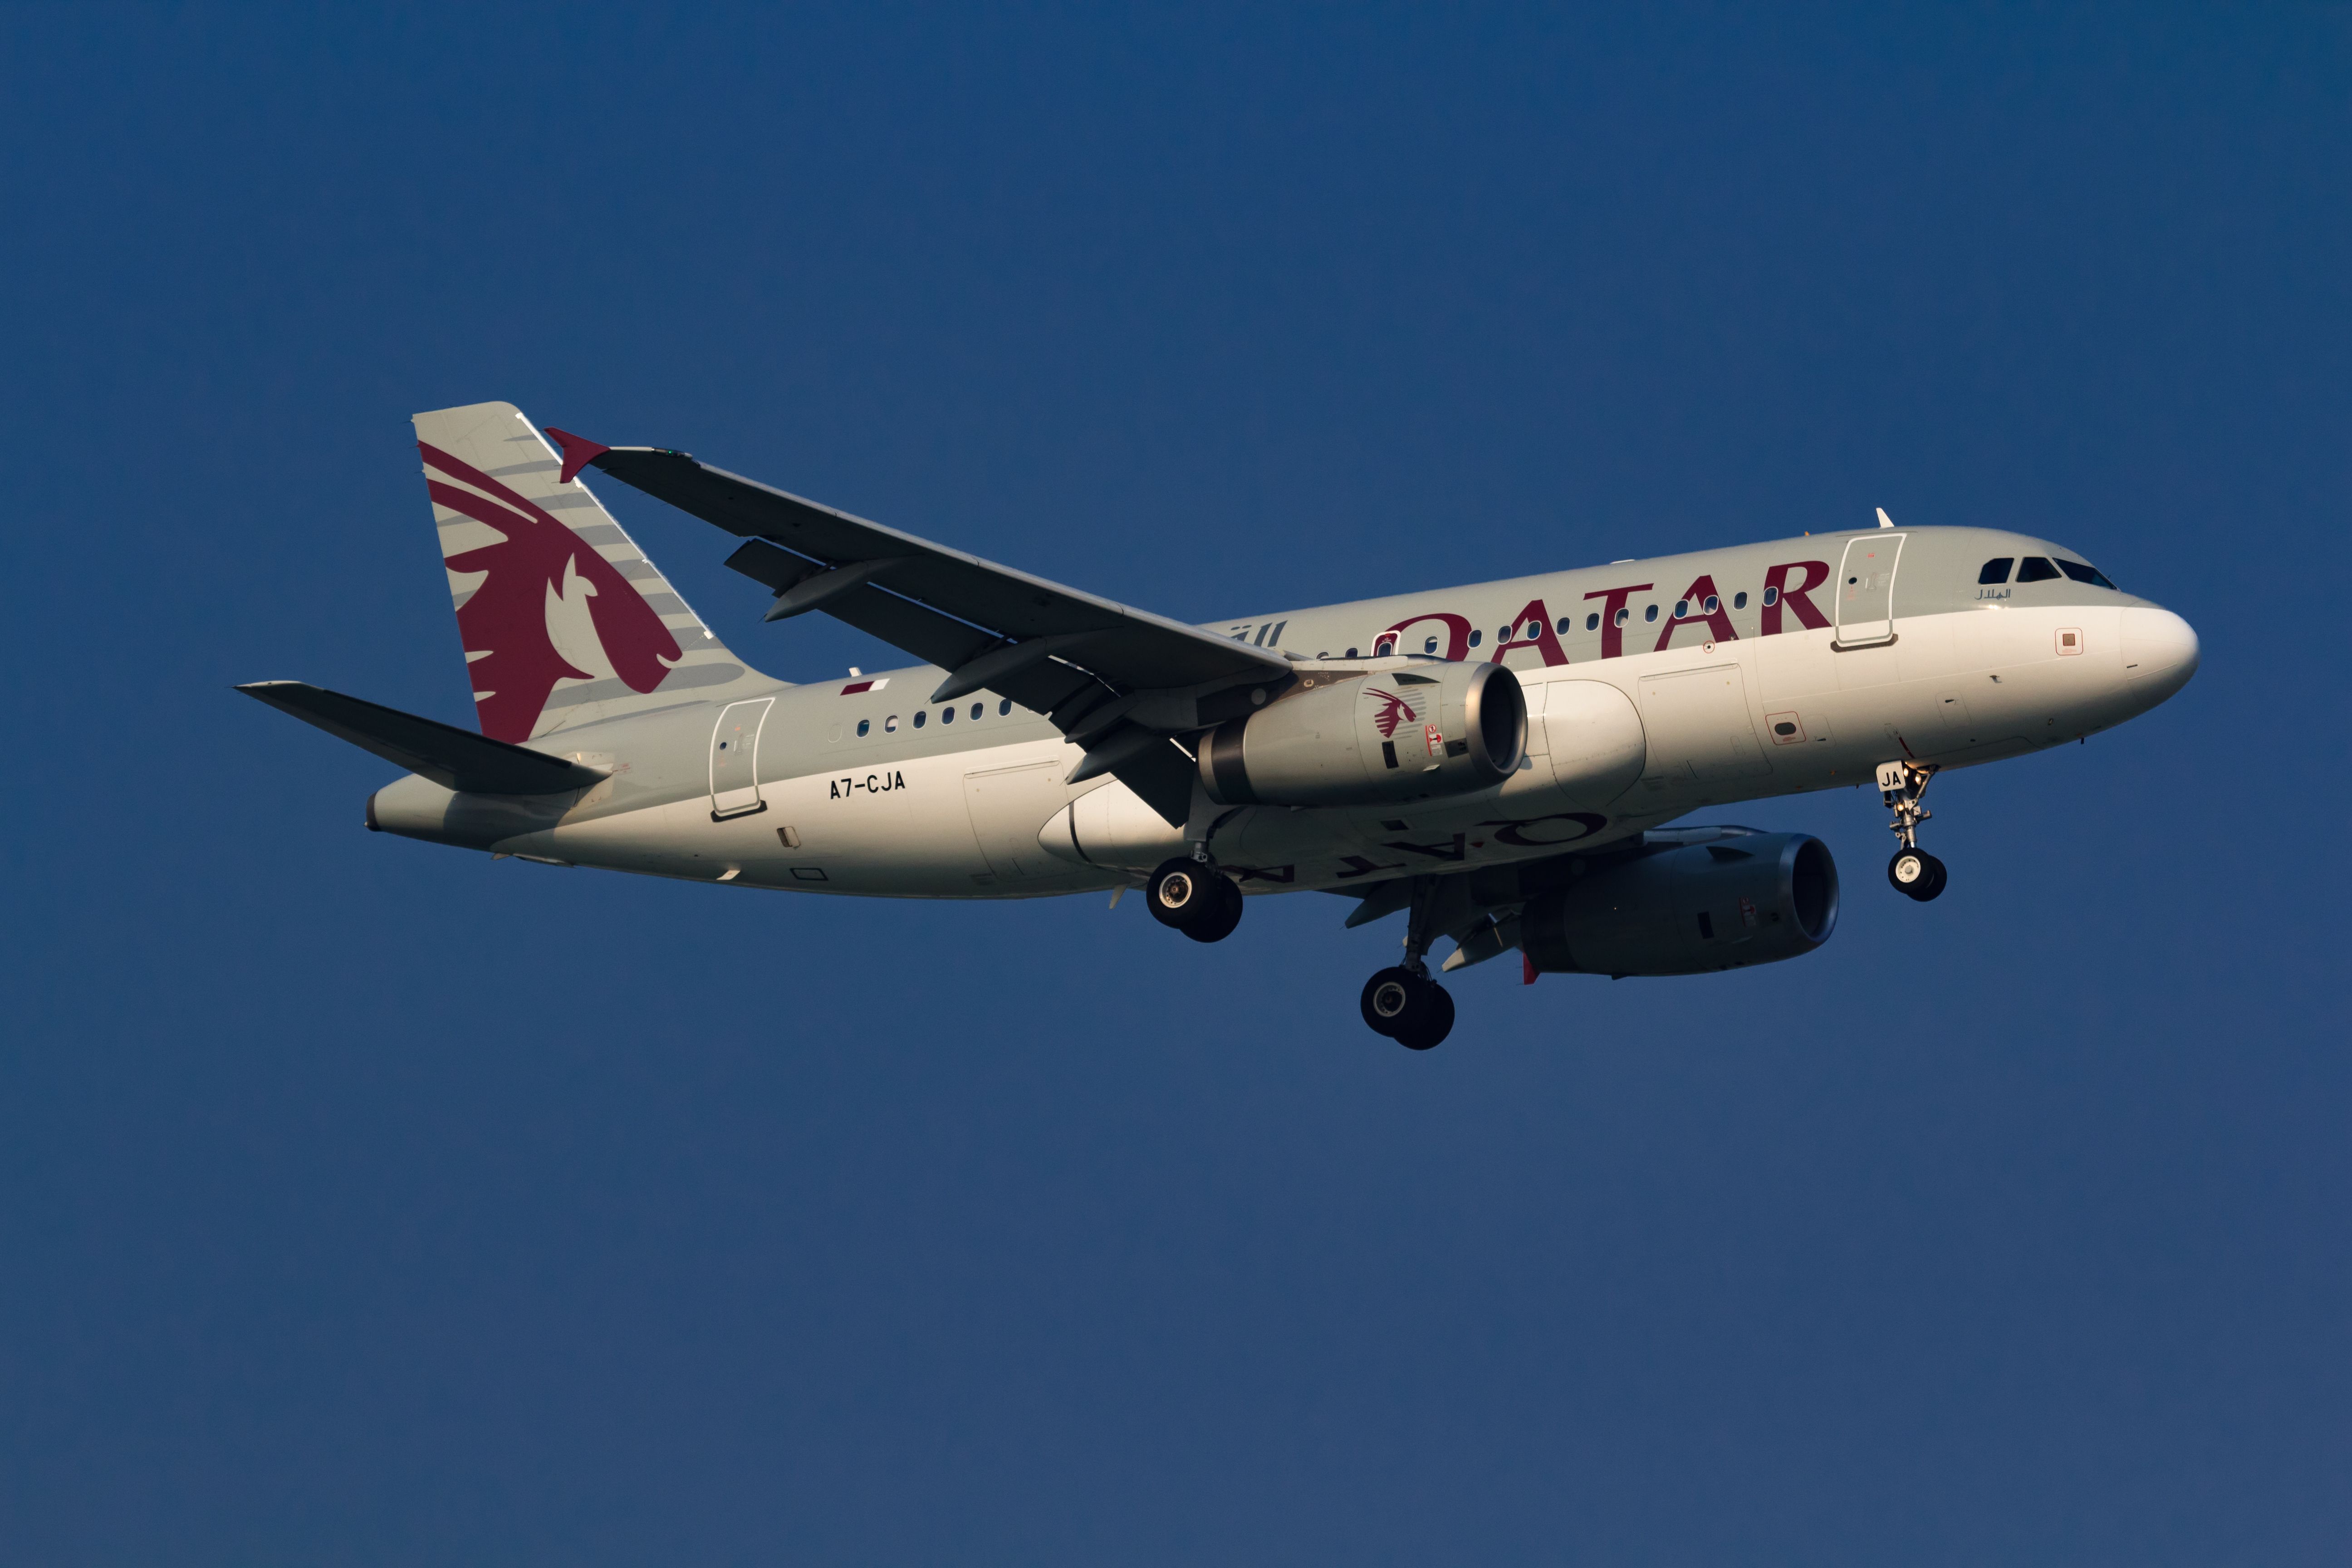 A Qatar Airways A319LR flying in the sky.